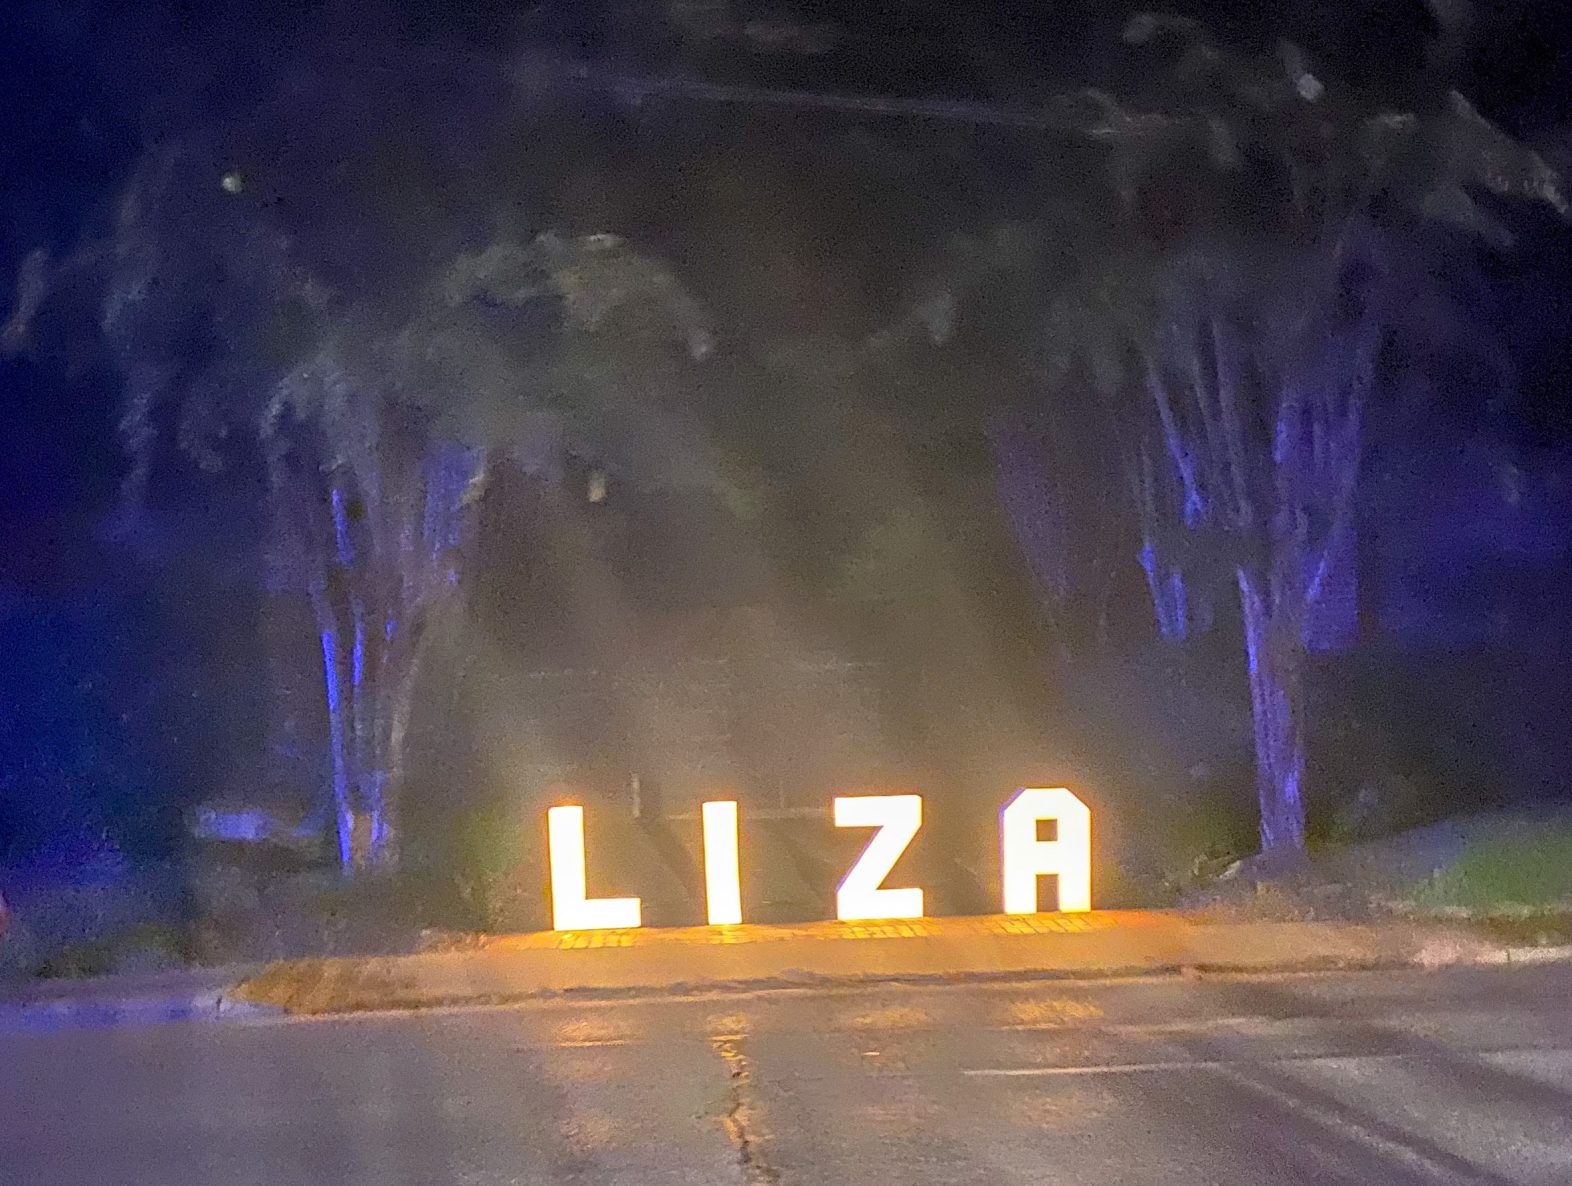 Liza's run last year